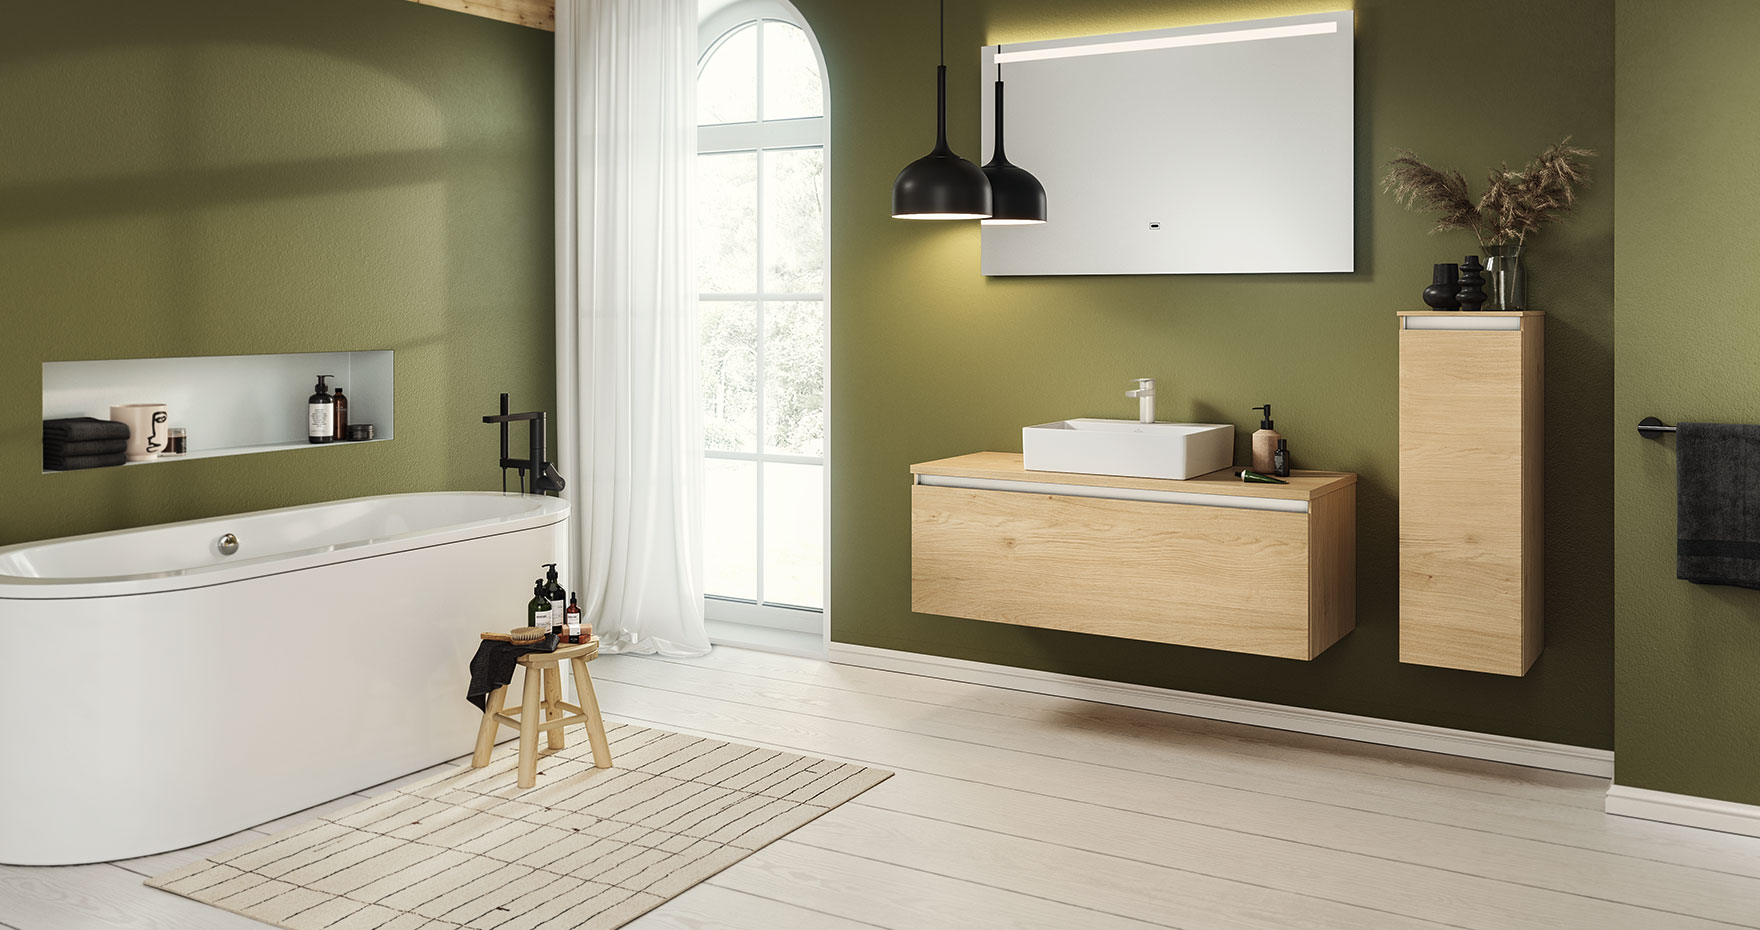 Dunkle Wandfarben und helle Badelemente , Metallregal und Holz: Erlaubt ist was gefällt.